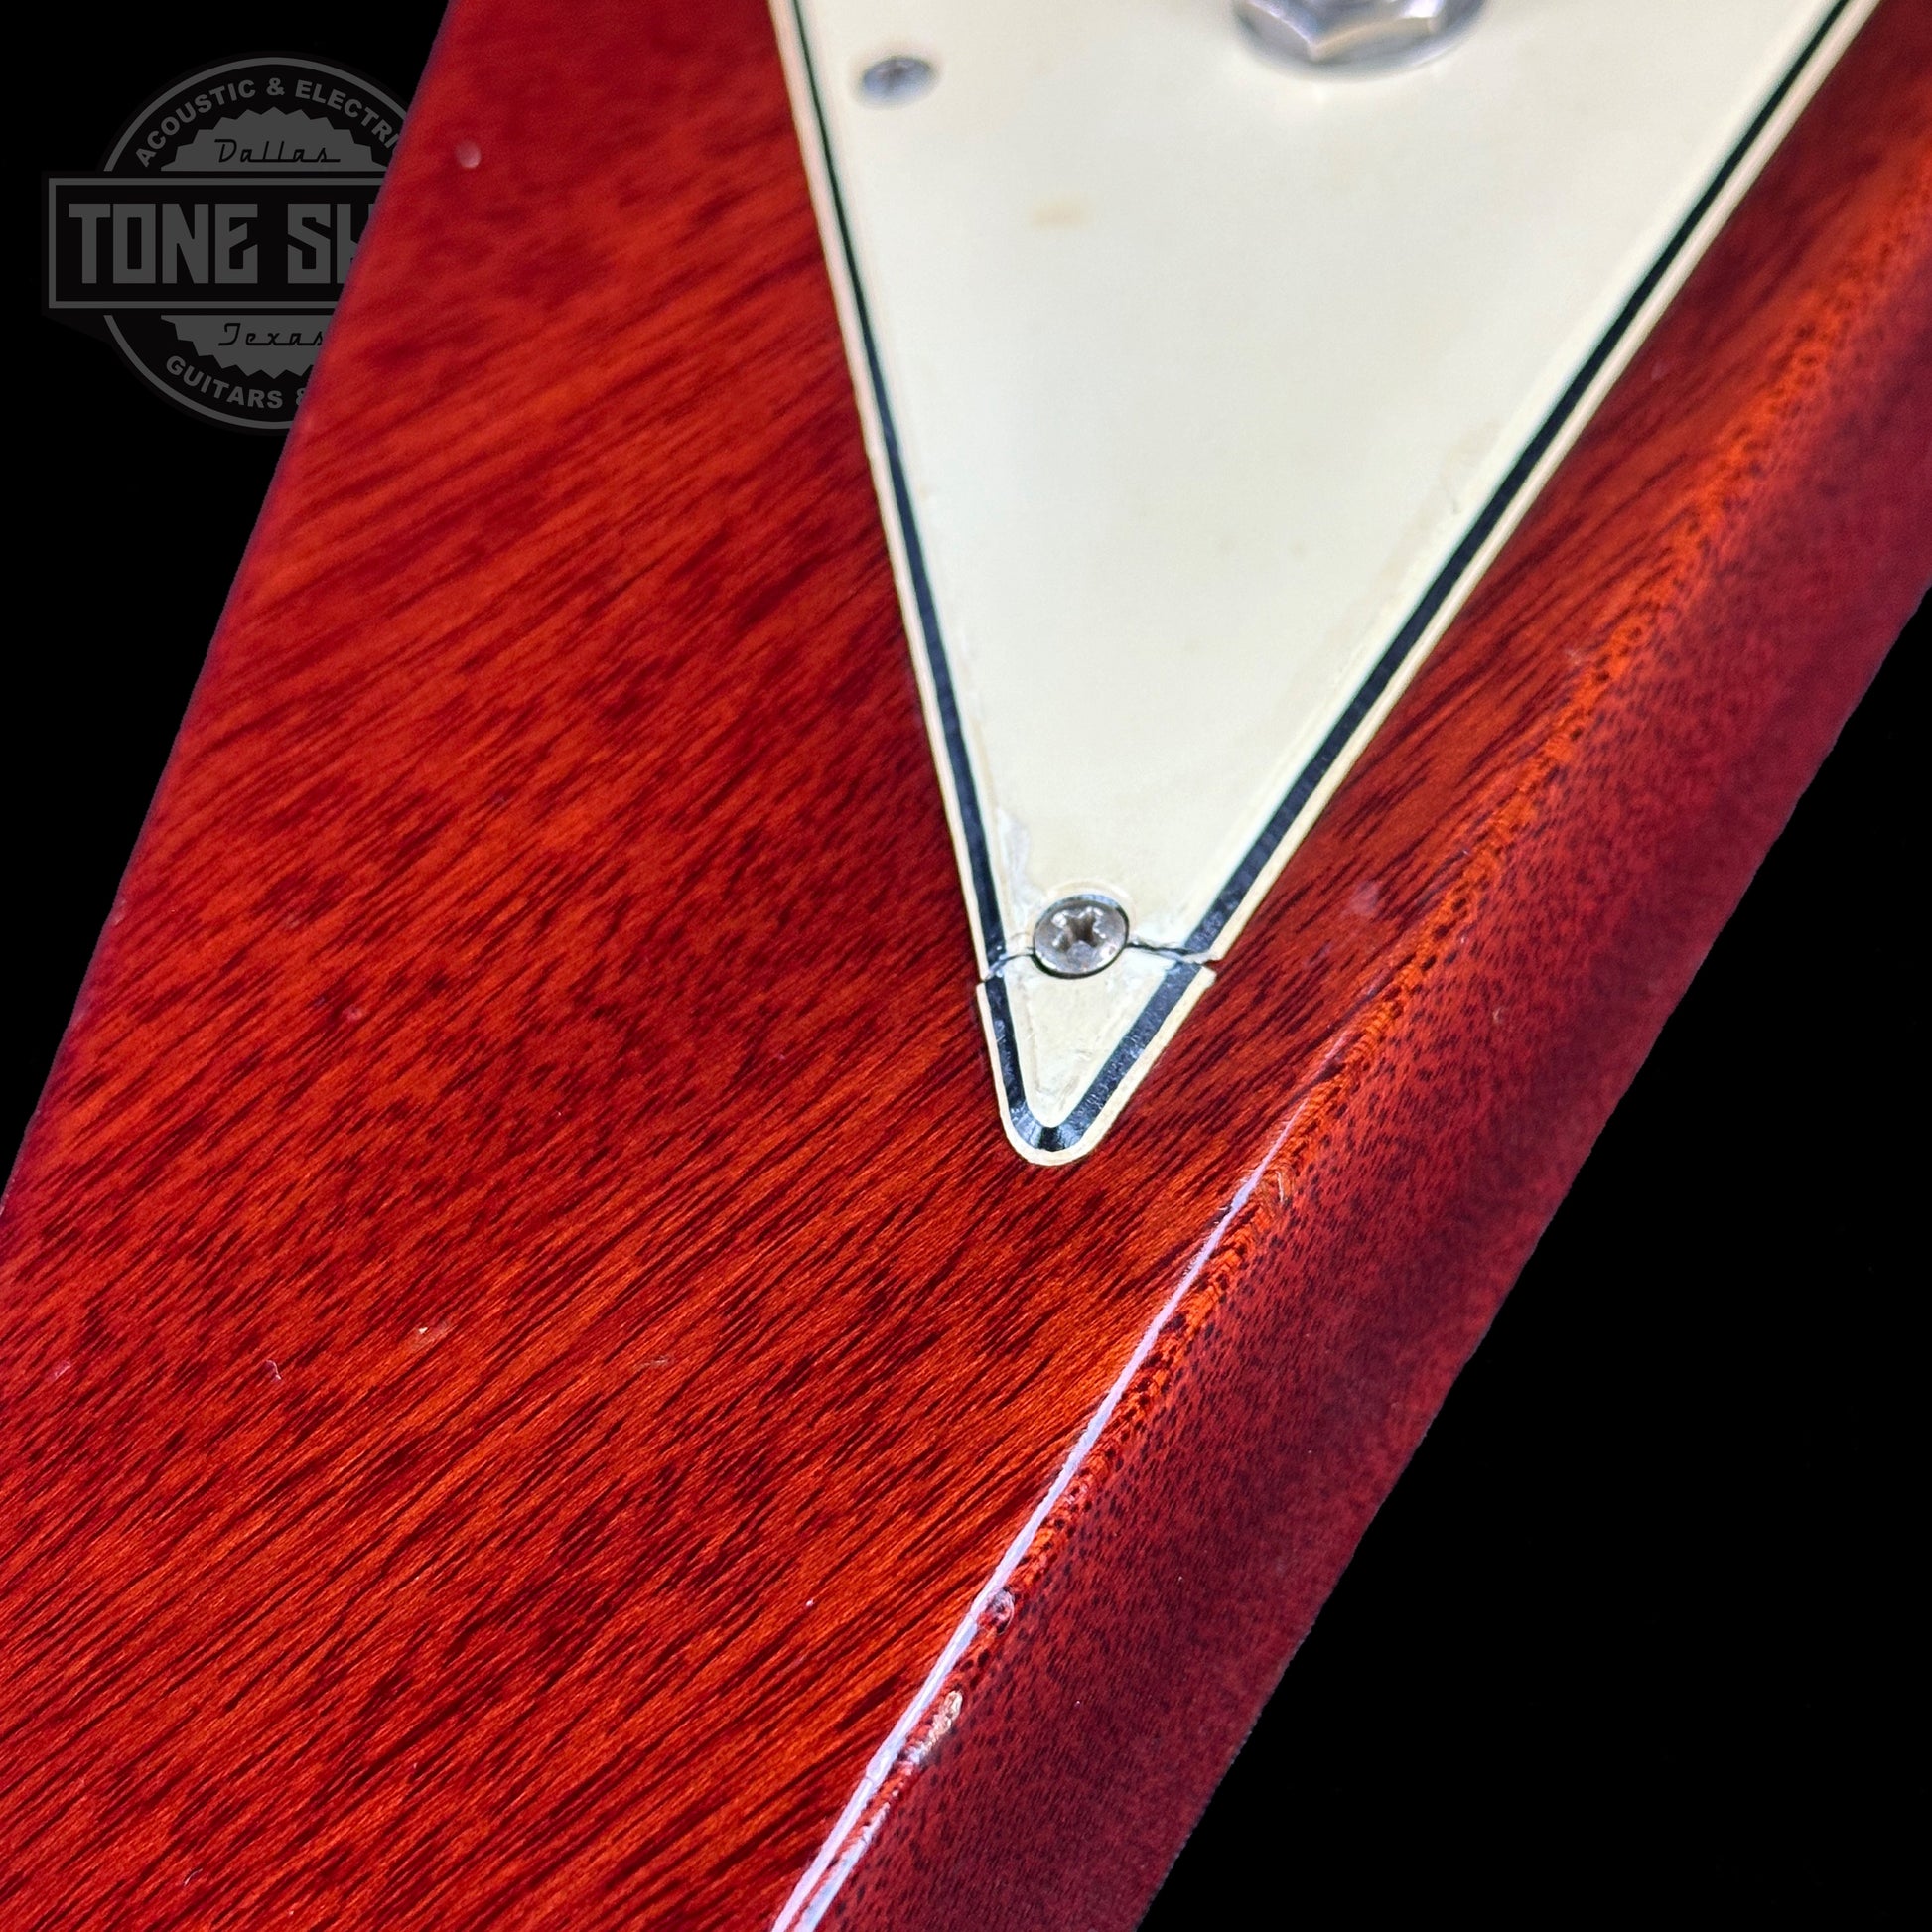 Pickguard shrink of Vintage 1971 Gibson Flying V Medallion #145.